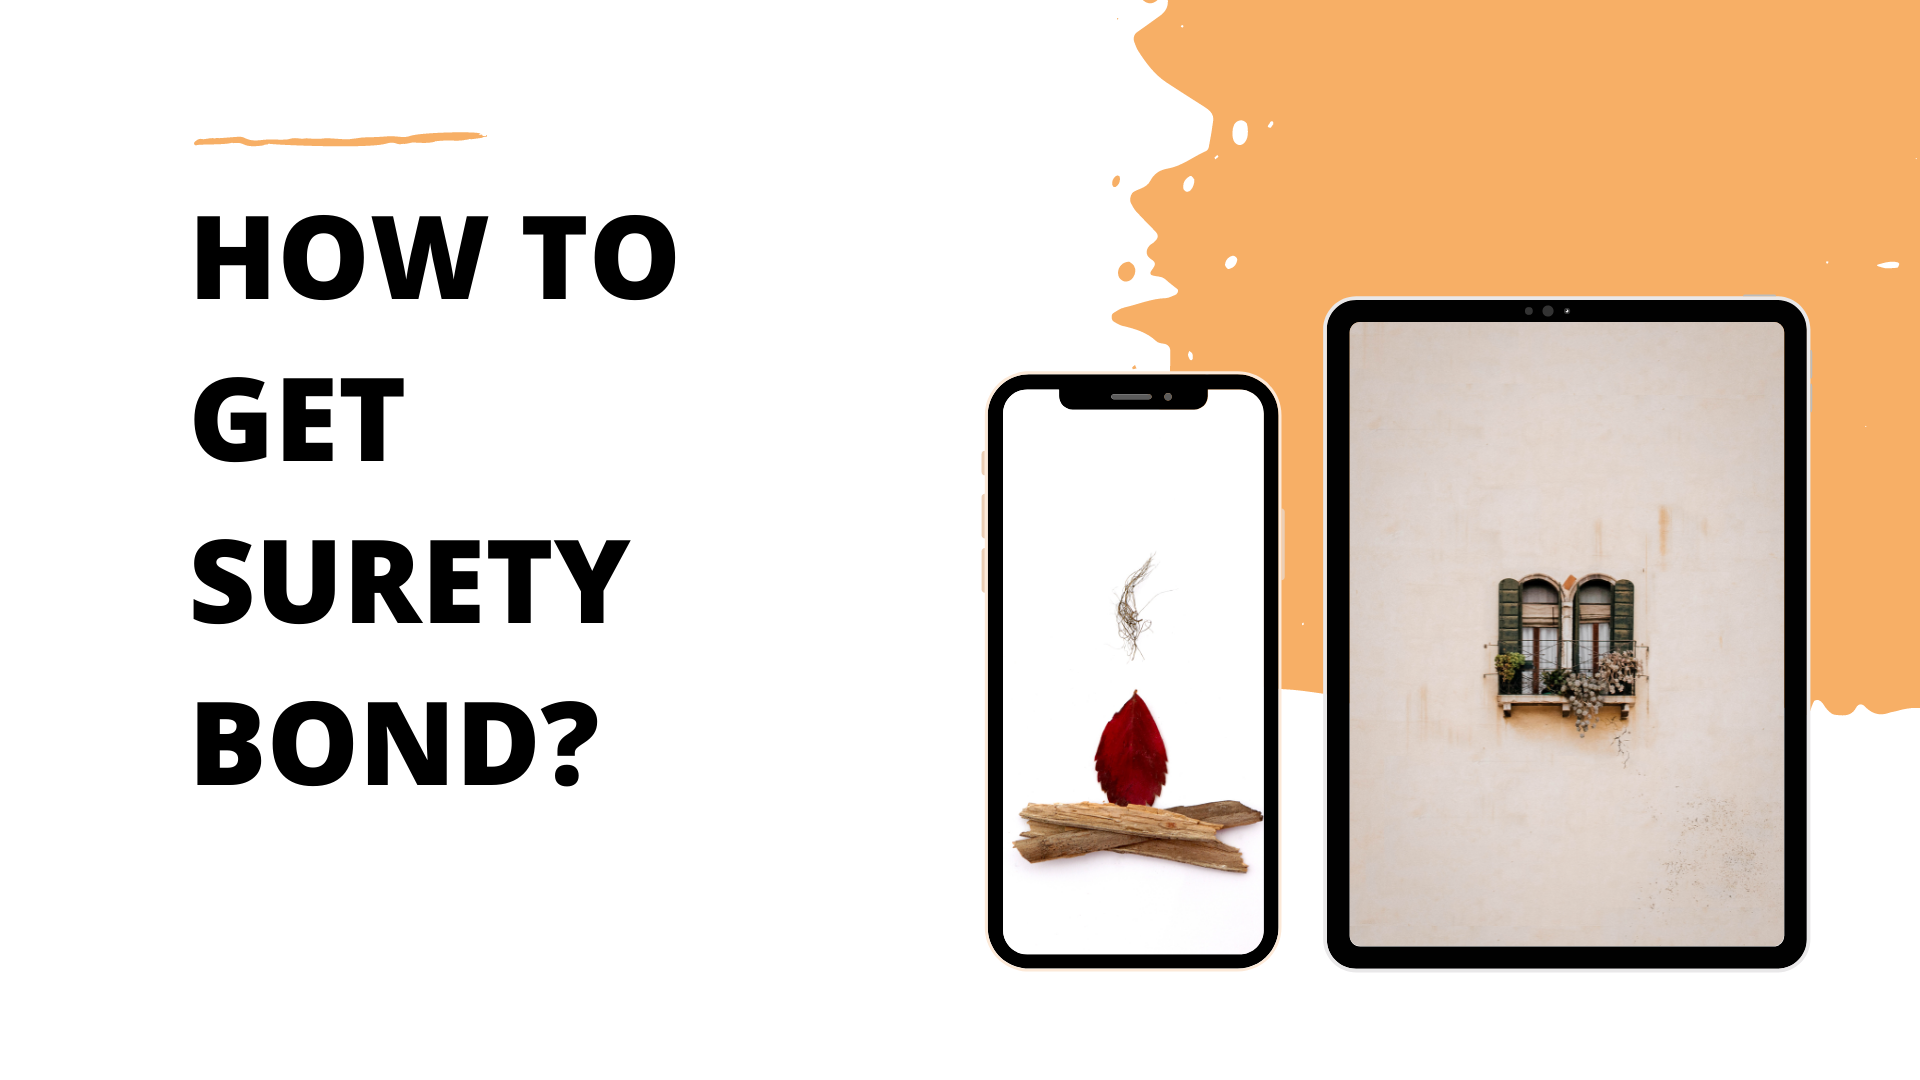 surety bond - Where to find a surety bond - cellphone